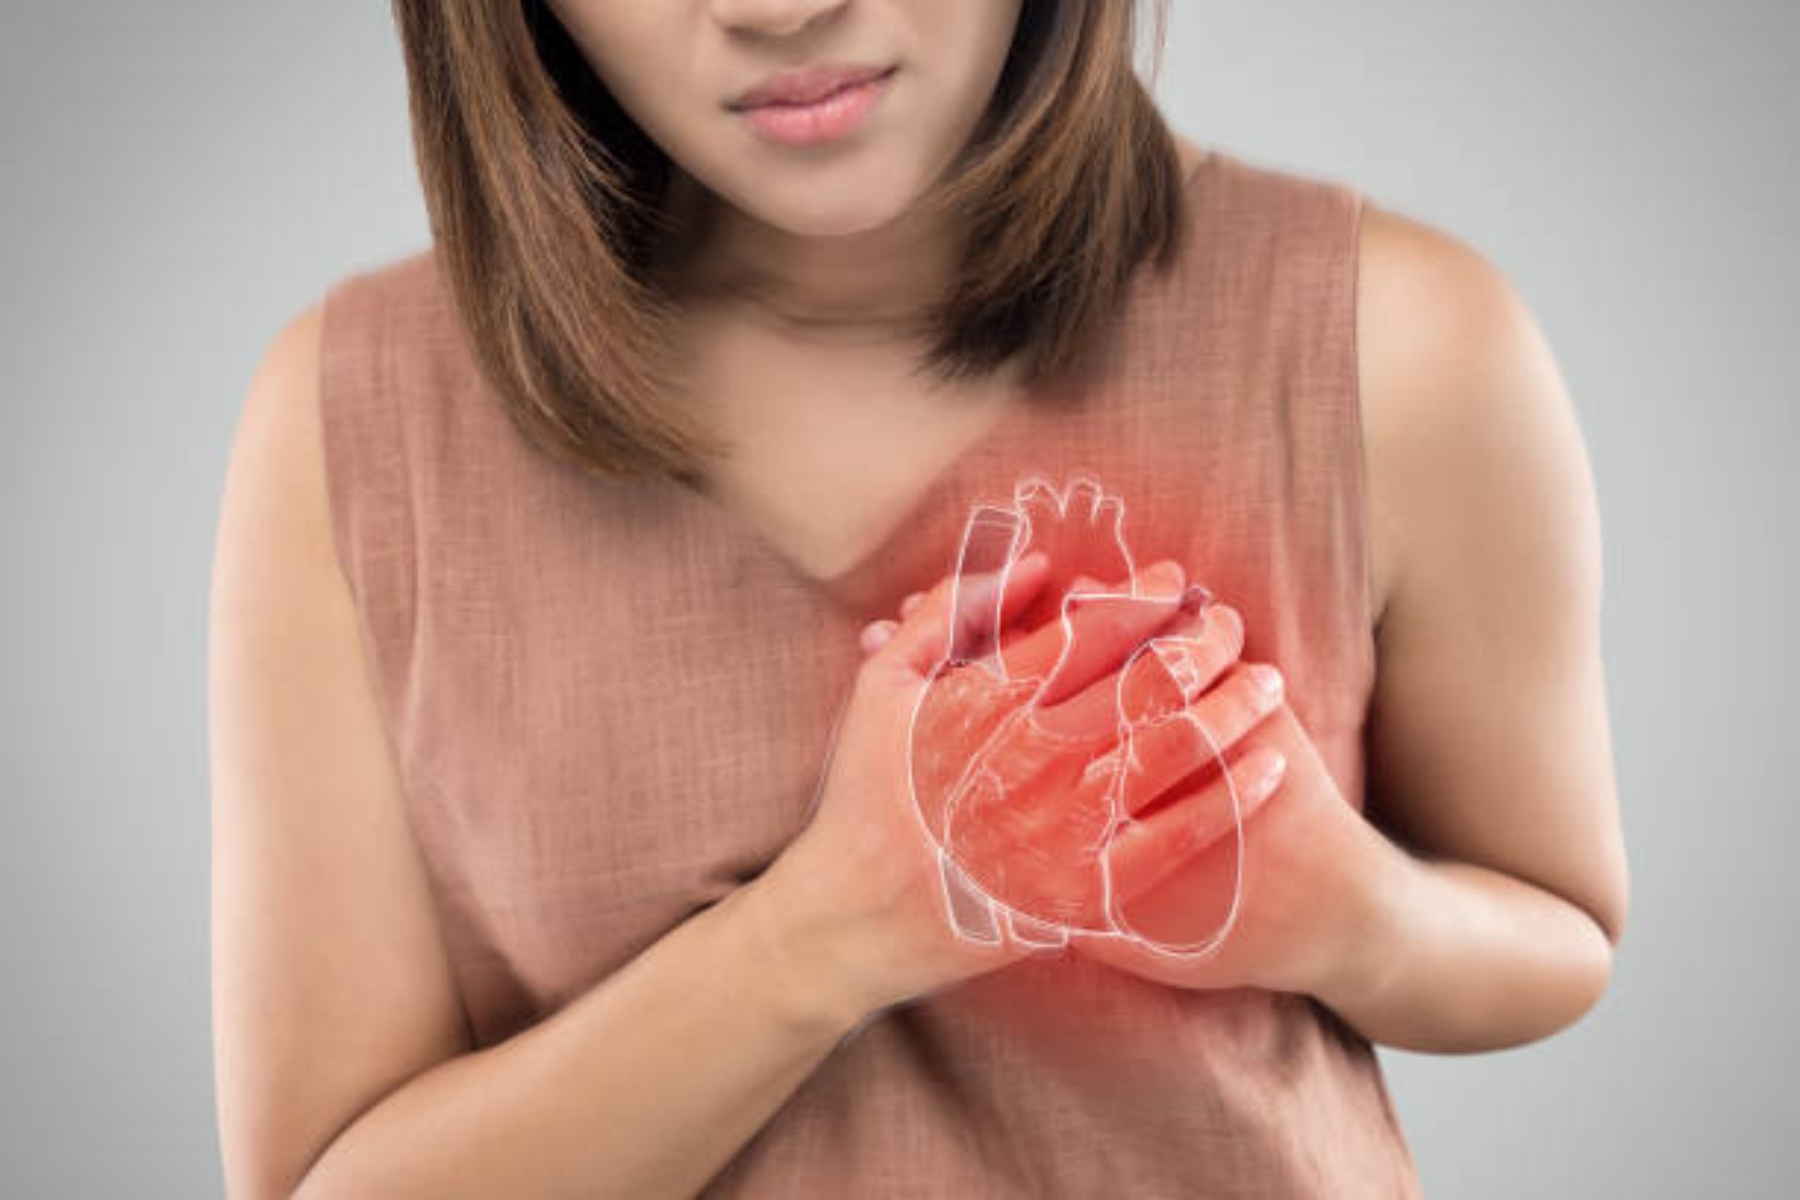 Νέα υγείας καρδιά: Οι καρδιαγγειακές παθήσεις θα αυξηθούν κατά 30% έως το 2060